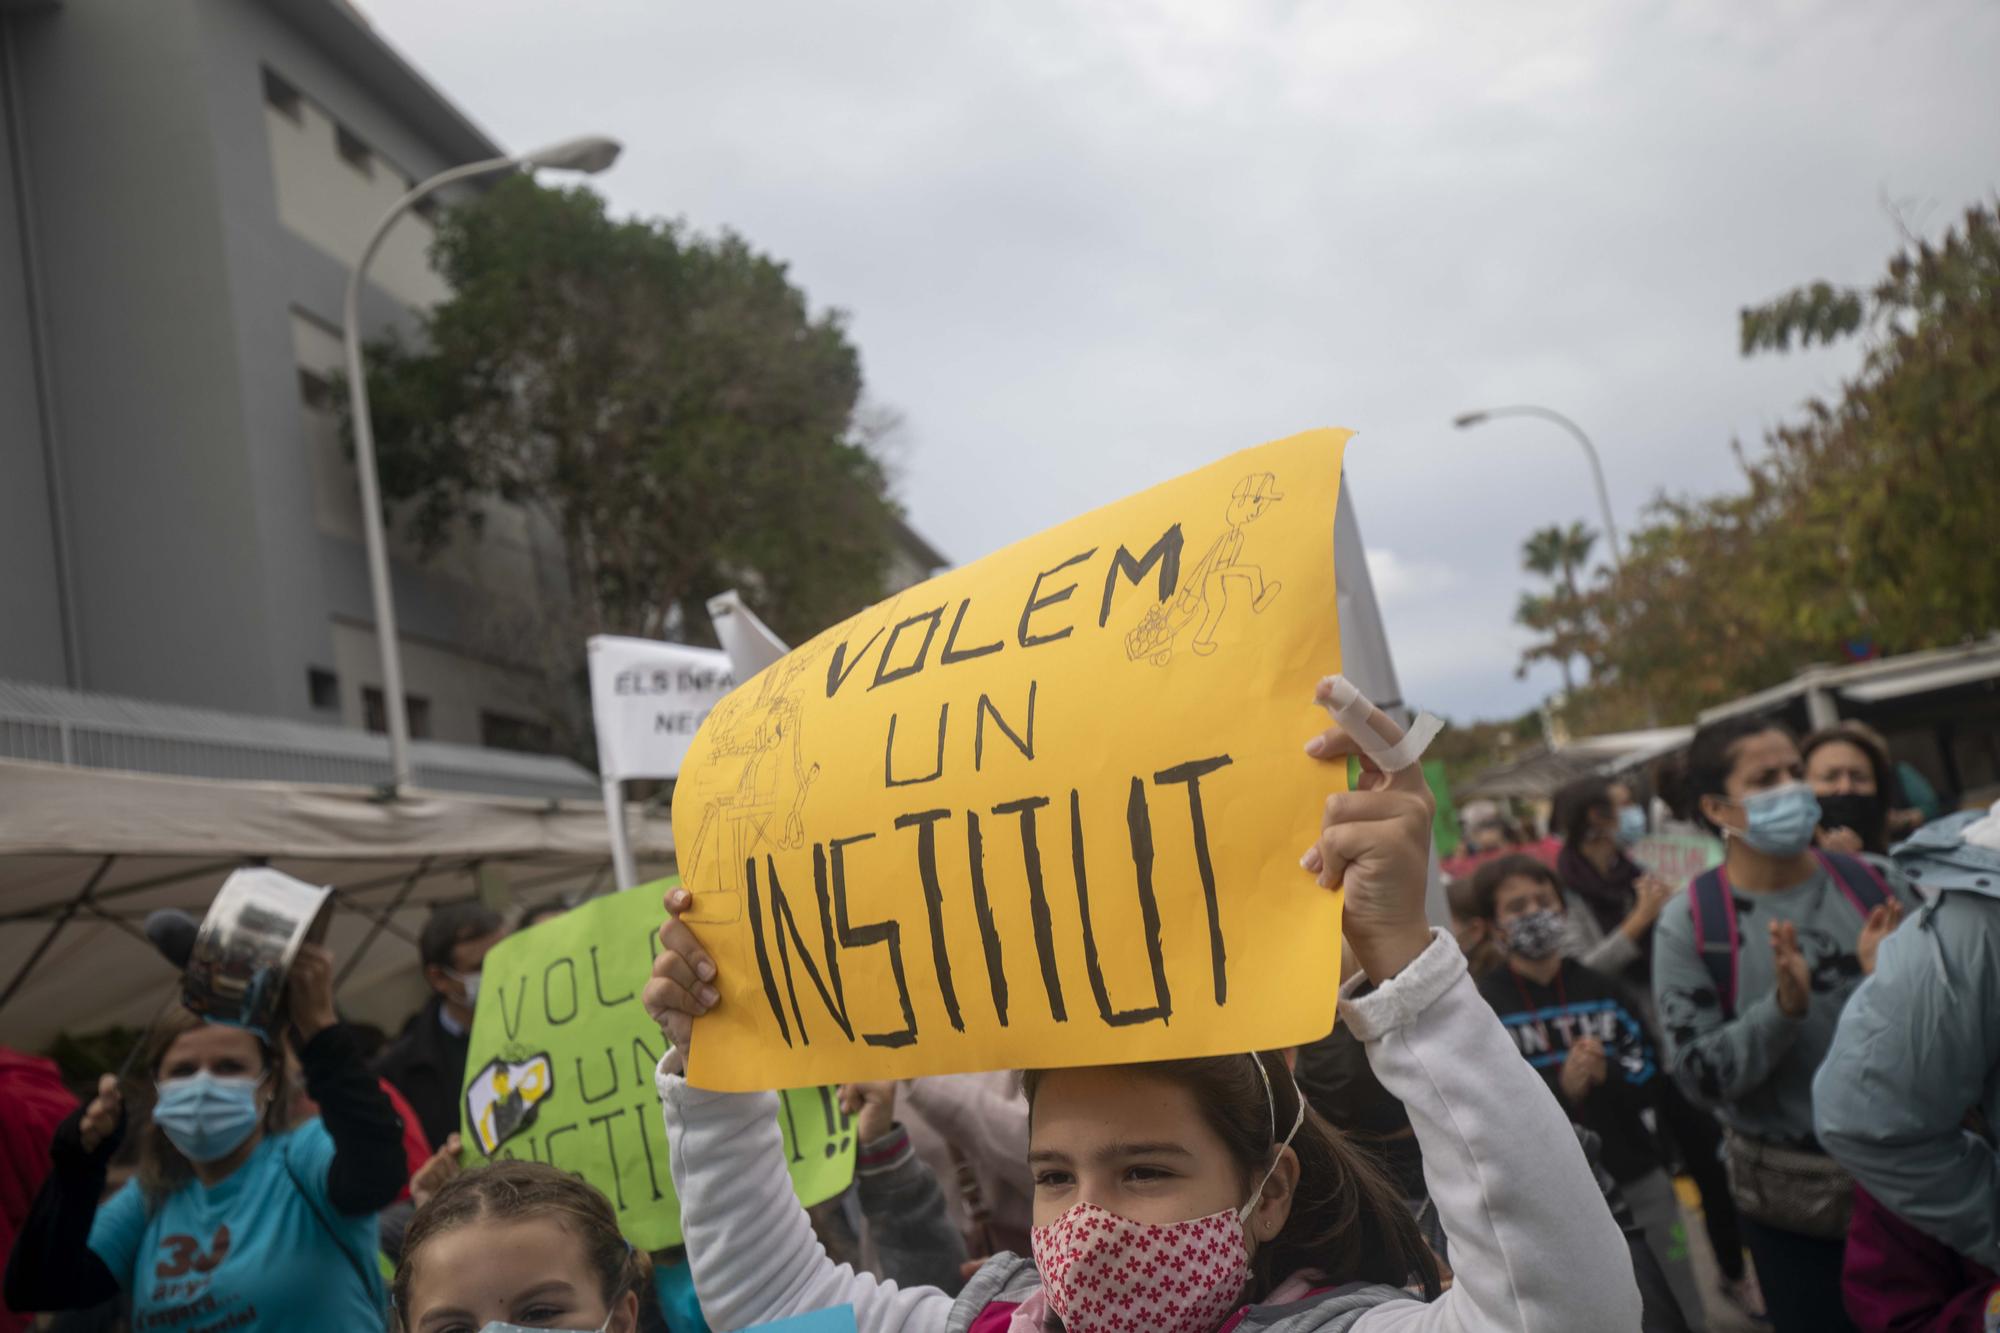 Más de 200 personas se manifiestan para exigir un instituto en Son Ferriol